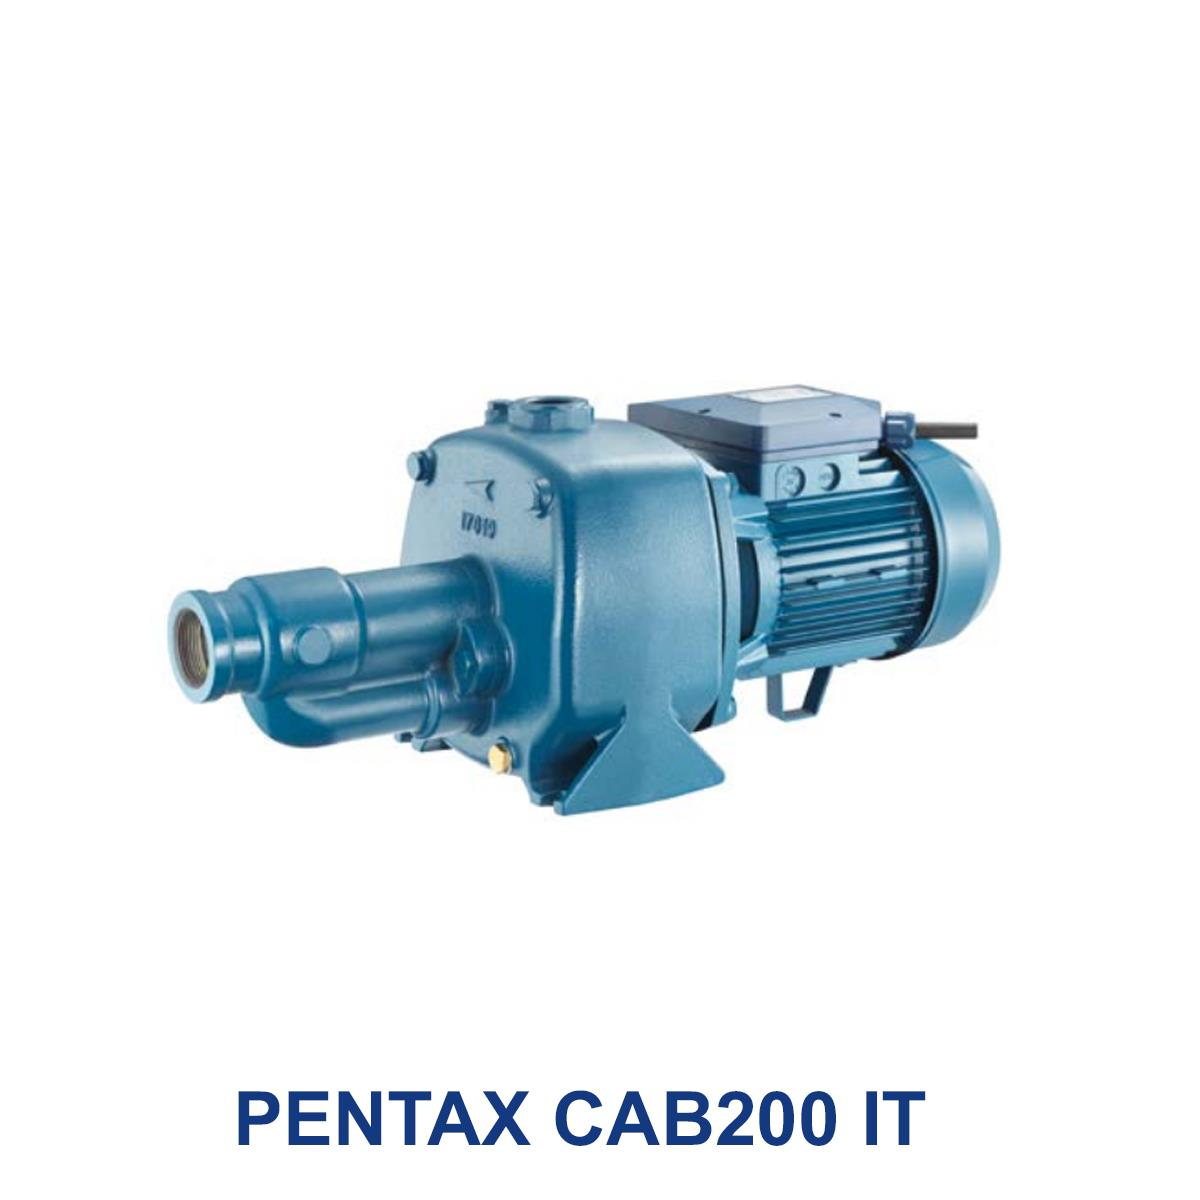 PENTAX-CAB200-IT